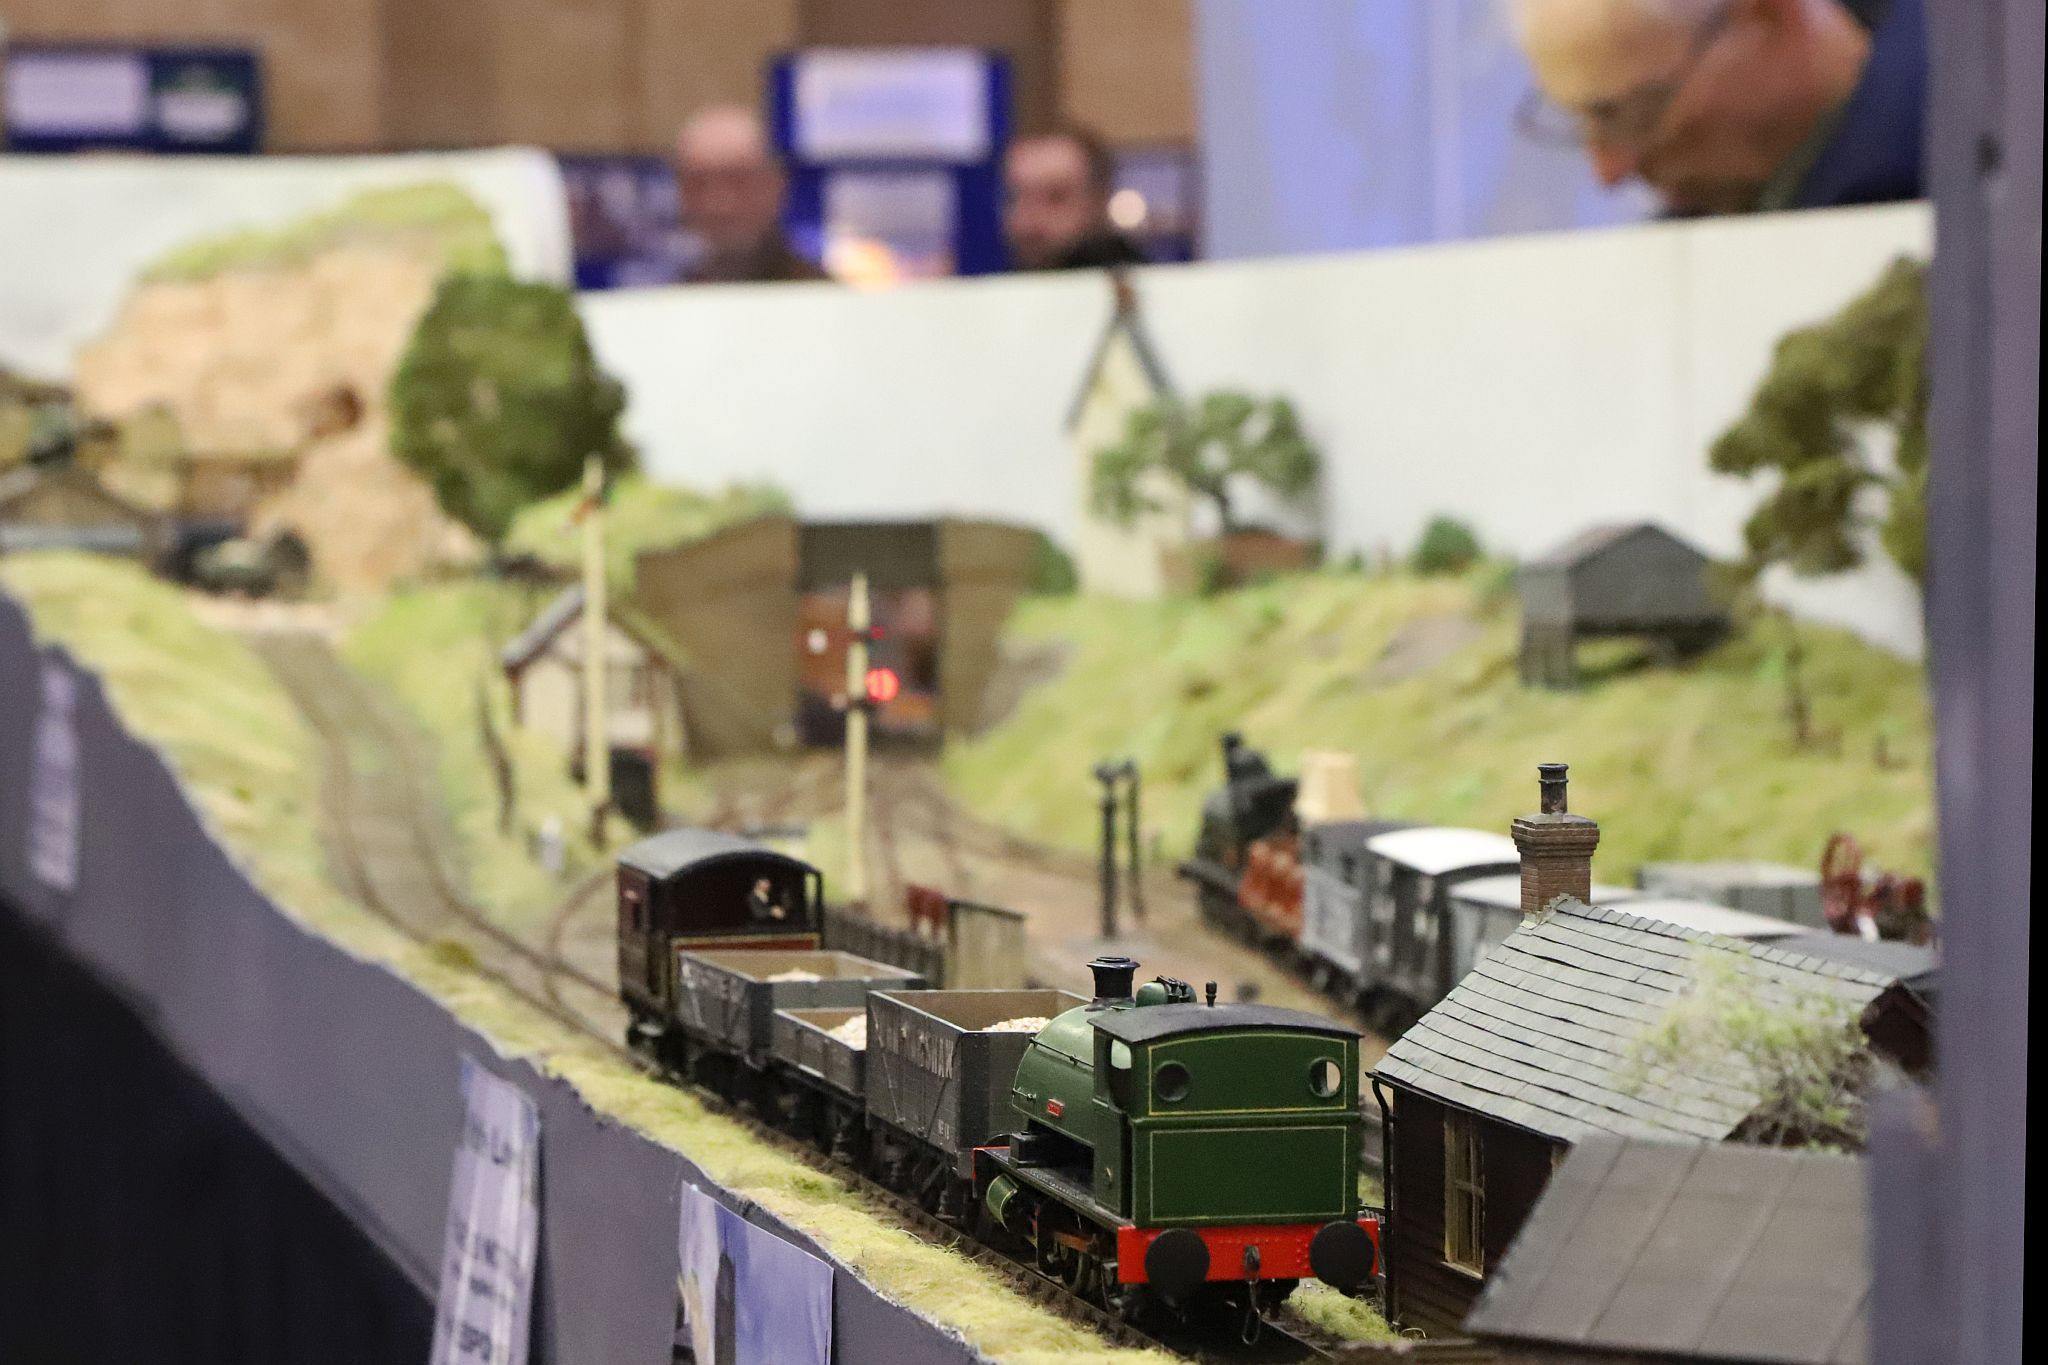 Wolfe Lowe O Gauge model railway layout. 2023 London Festival of Railway Modelling, Alexandra Palace, London